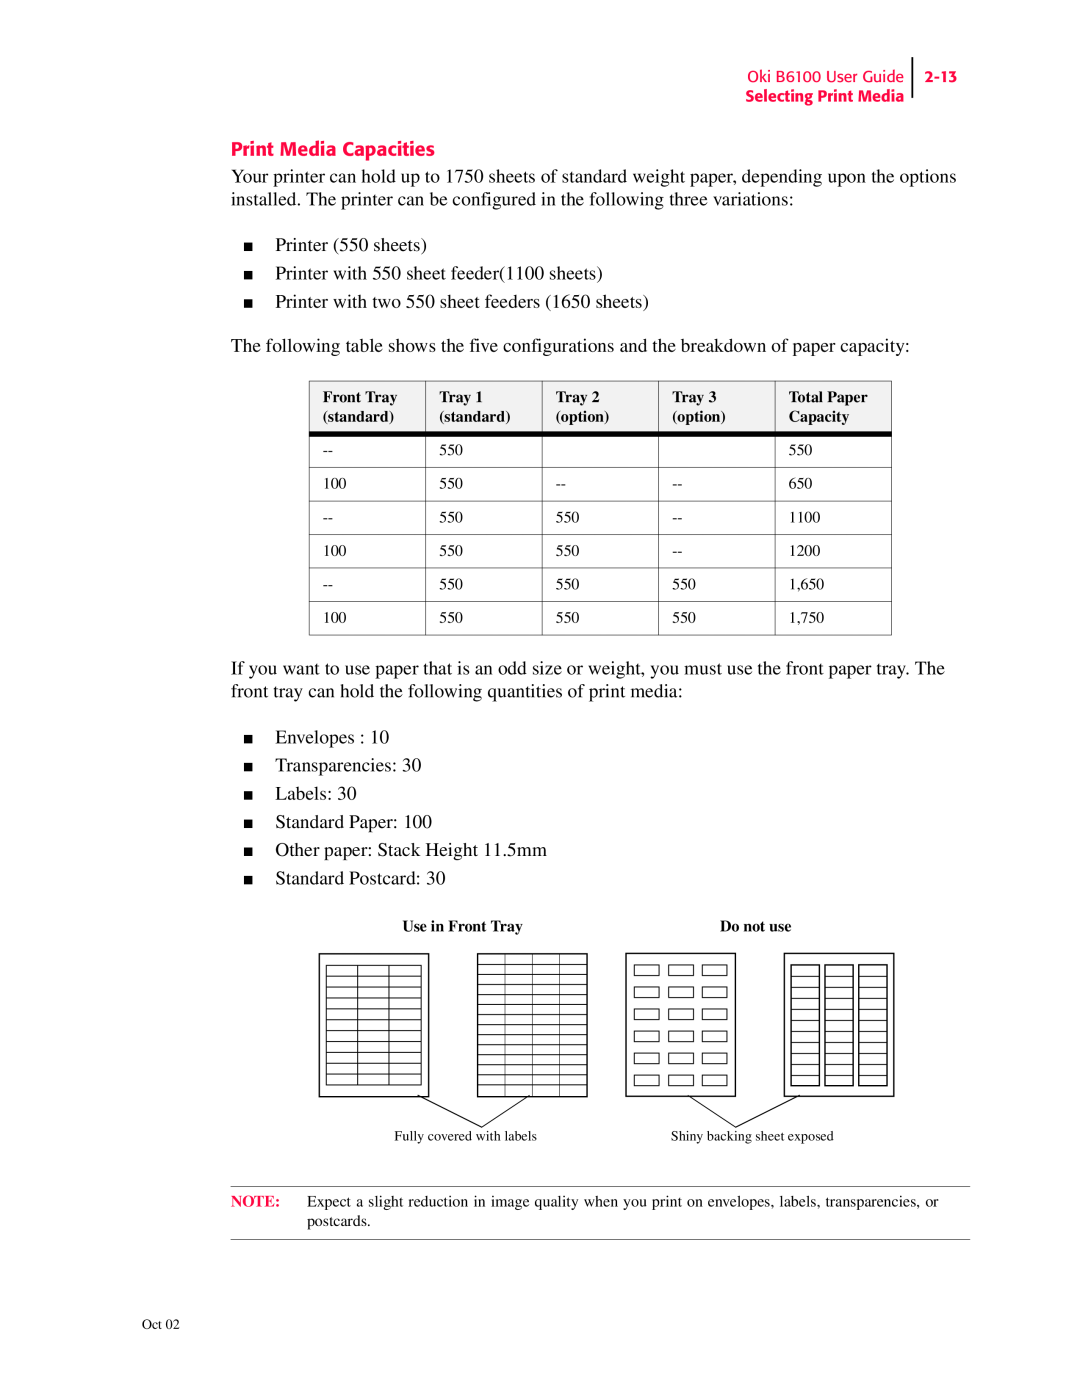 Oki 6100 manual Print Media Capacities, Printer 550 sheets Printer with 550 sheet feeder1100 sheets 